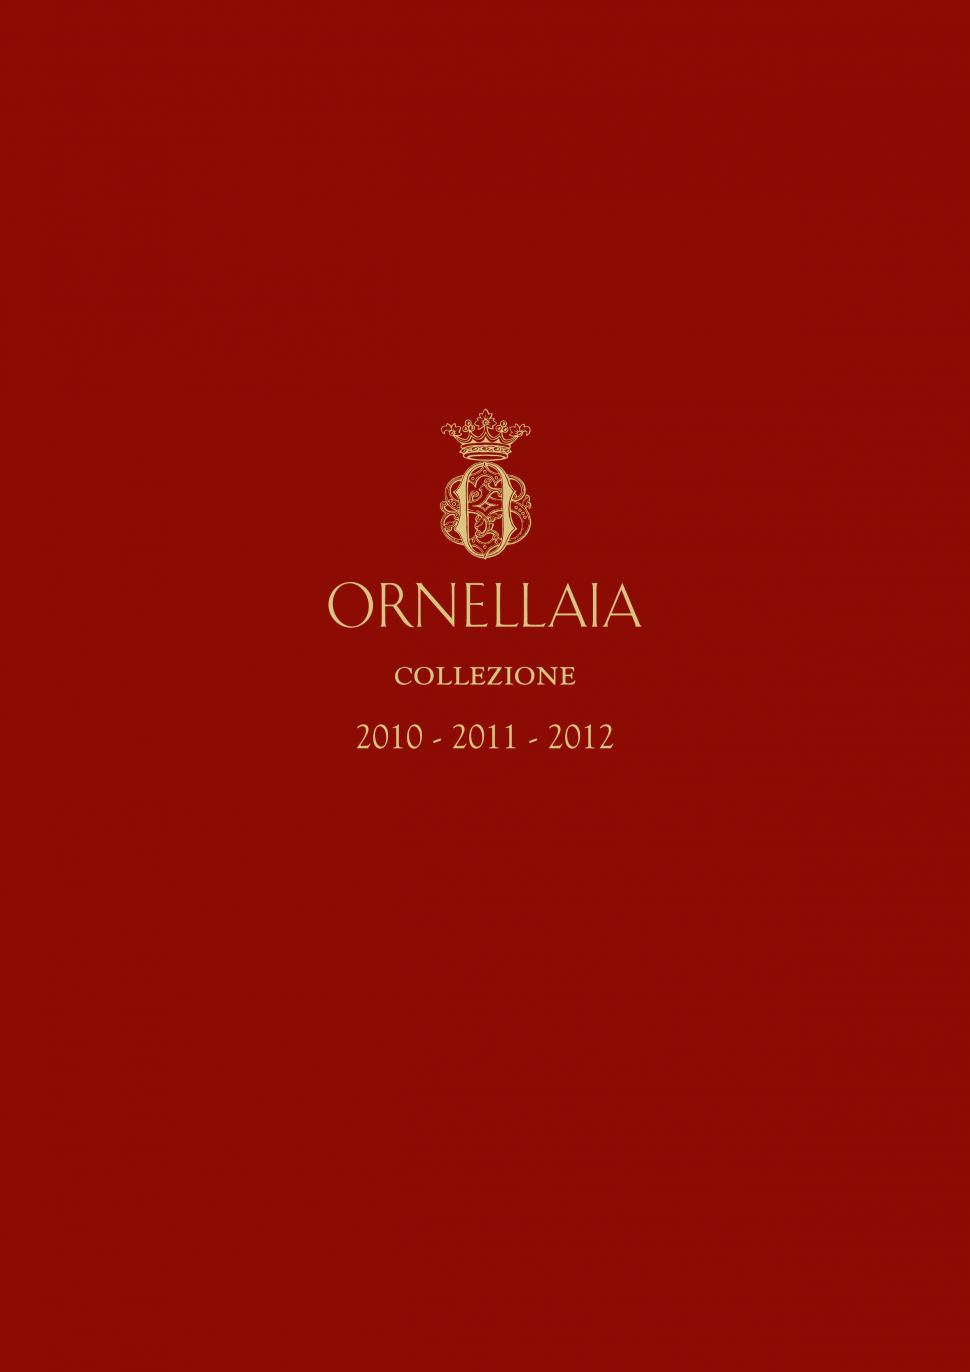 Ornellaia Collezione 2010 - 2011 - 2012